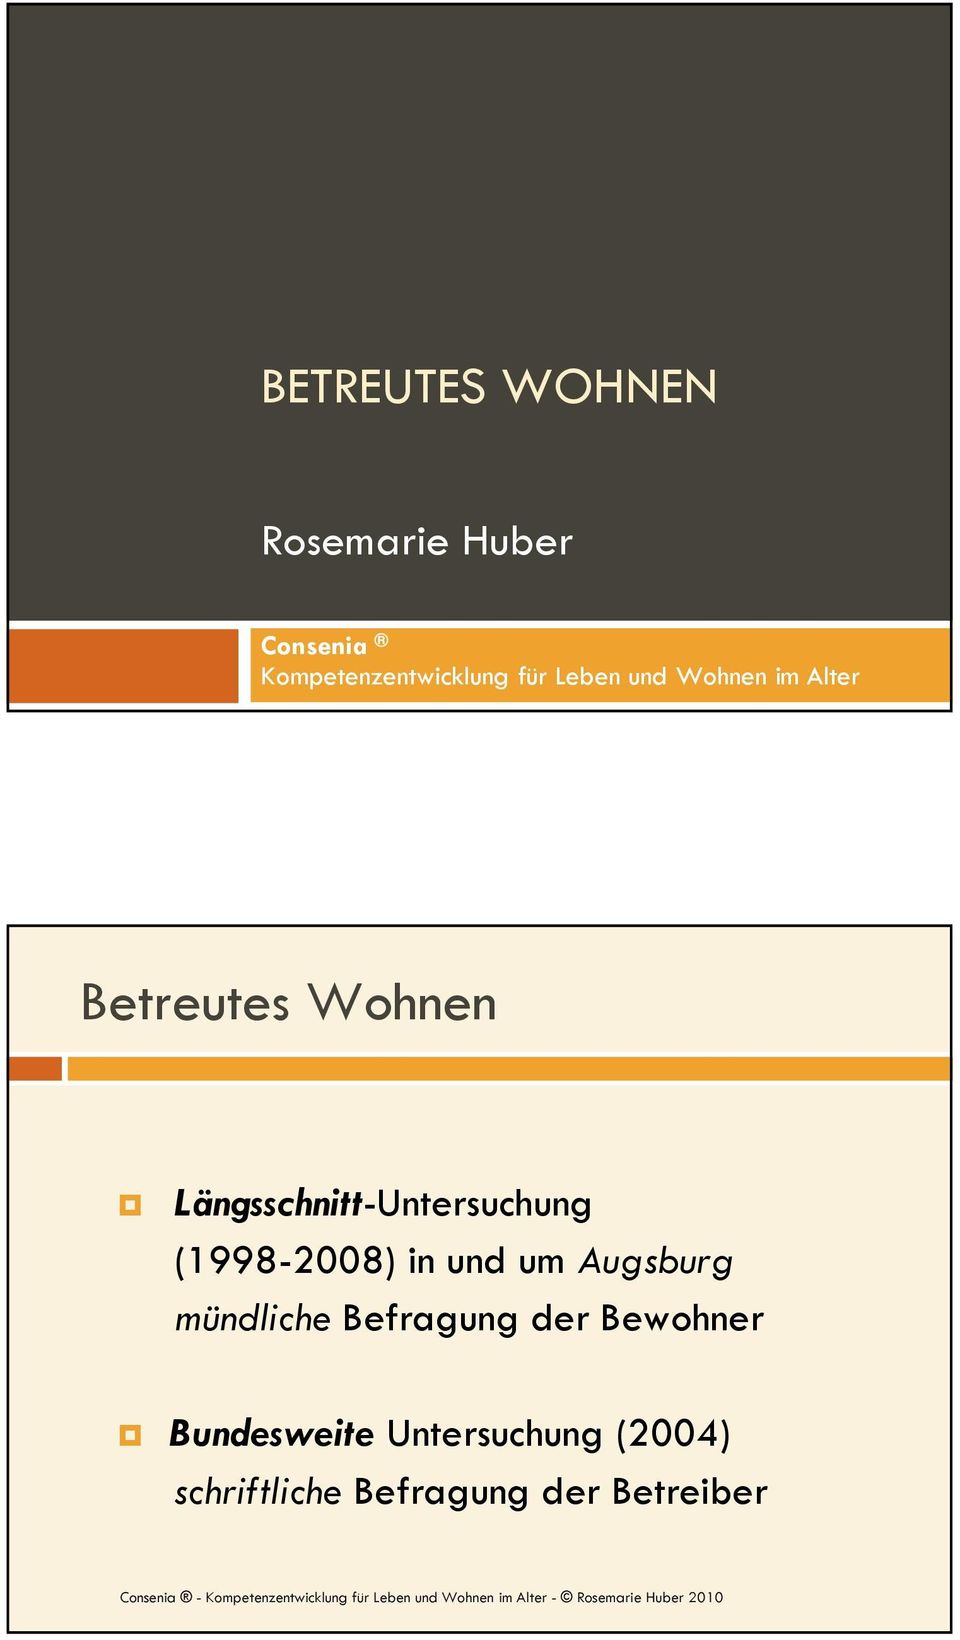 Längsschnitt-Untersuchung (1998-2008) in und um Augsburg mündliche